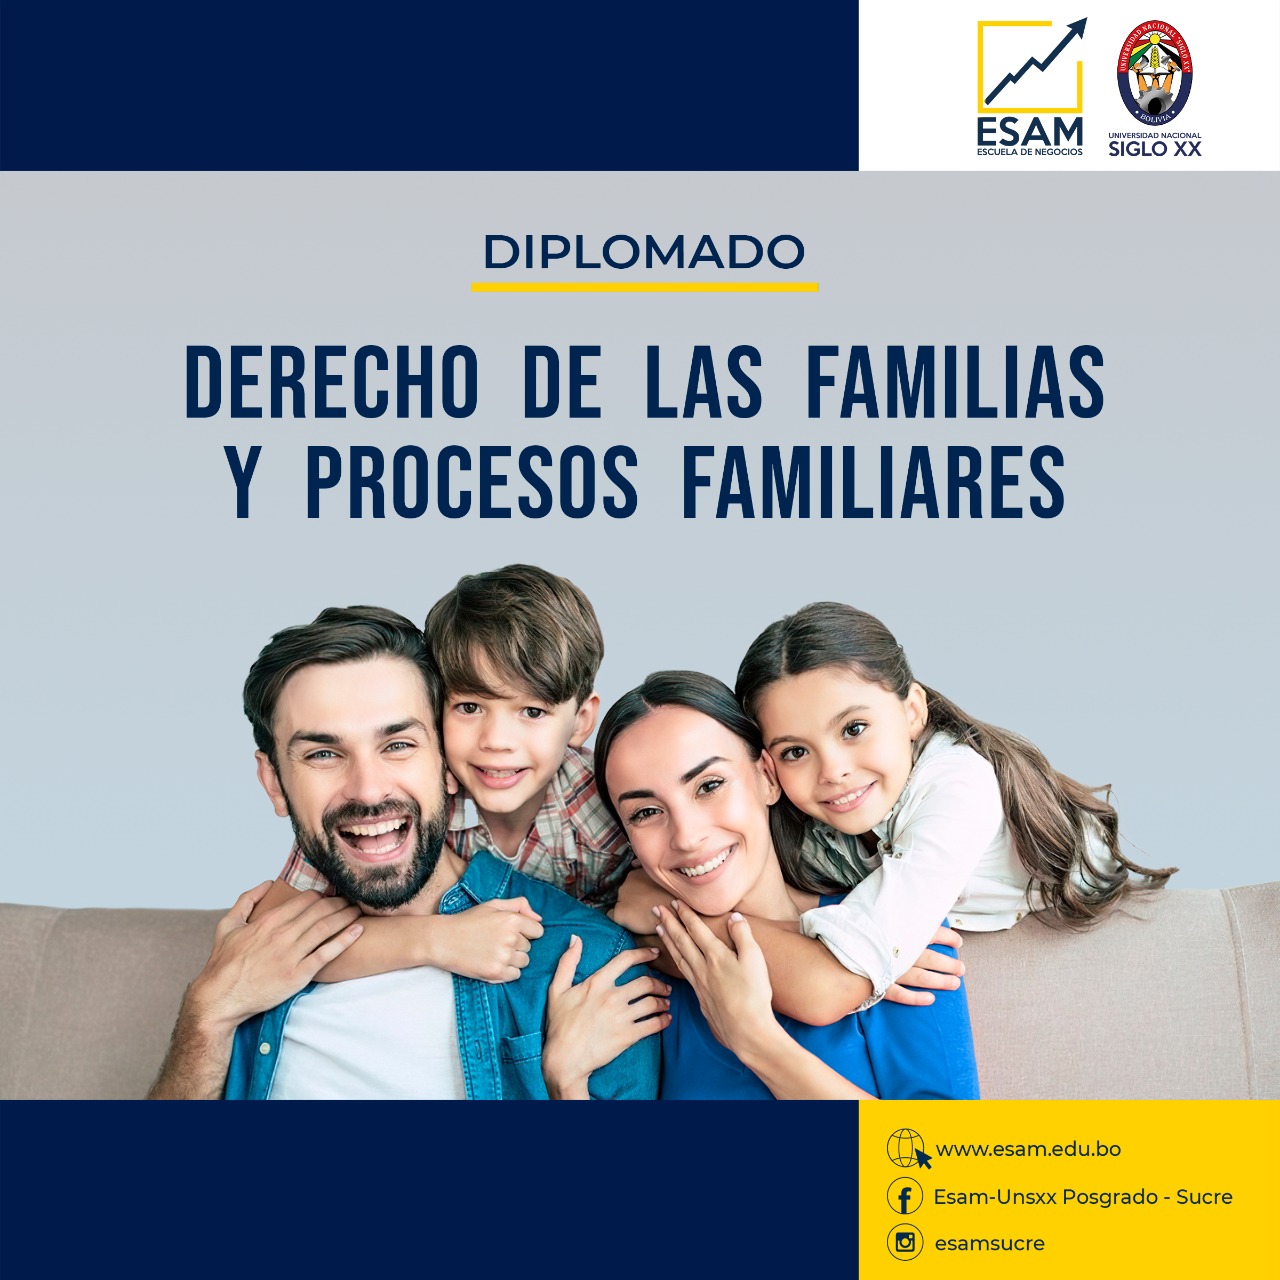 Diplomado DERECHO DE LAS FAMILIAS Y PROCESOS FAMILIARES.